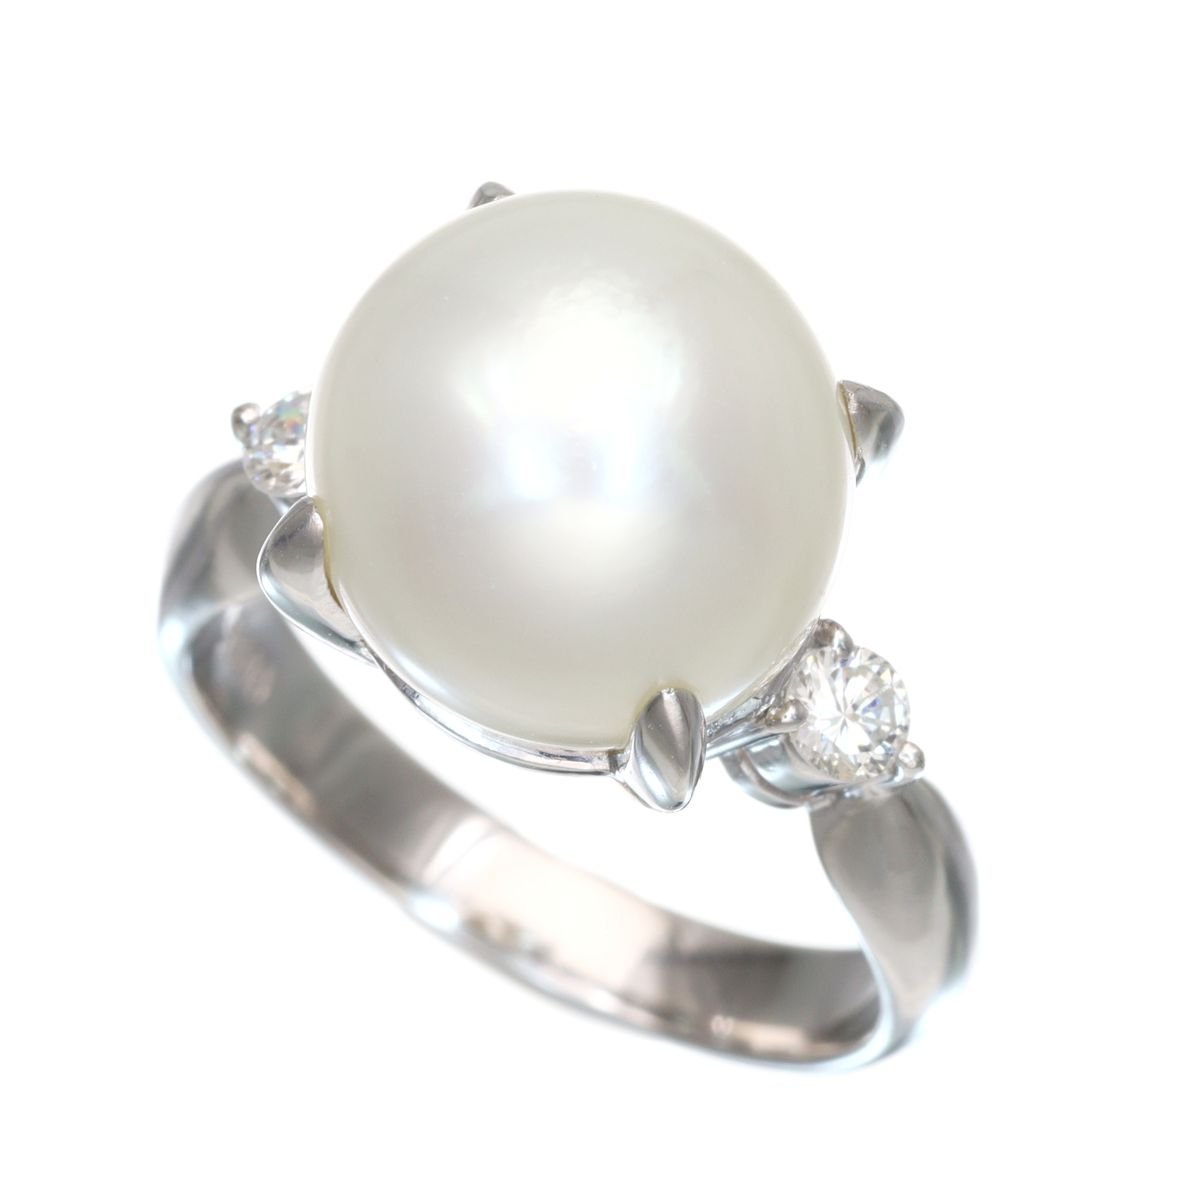 白く美しい照りとダイヤの輝きに魅了される Pt900 南洋パール 真珠 ダイヤモンド リング 8.3g 0.18ct 11.1mm 超美品 ◎04A95